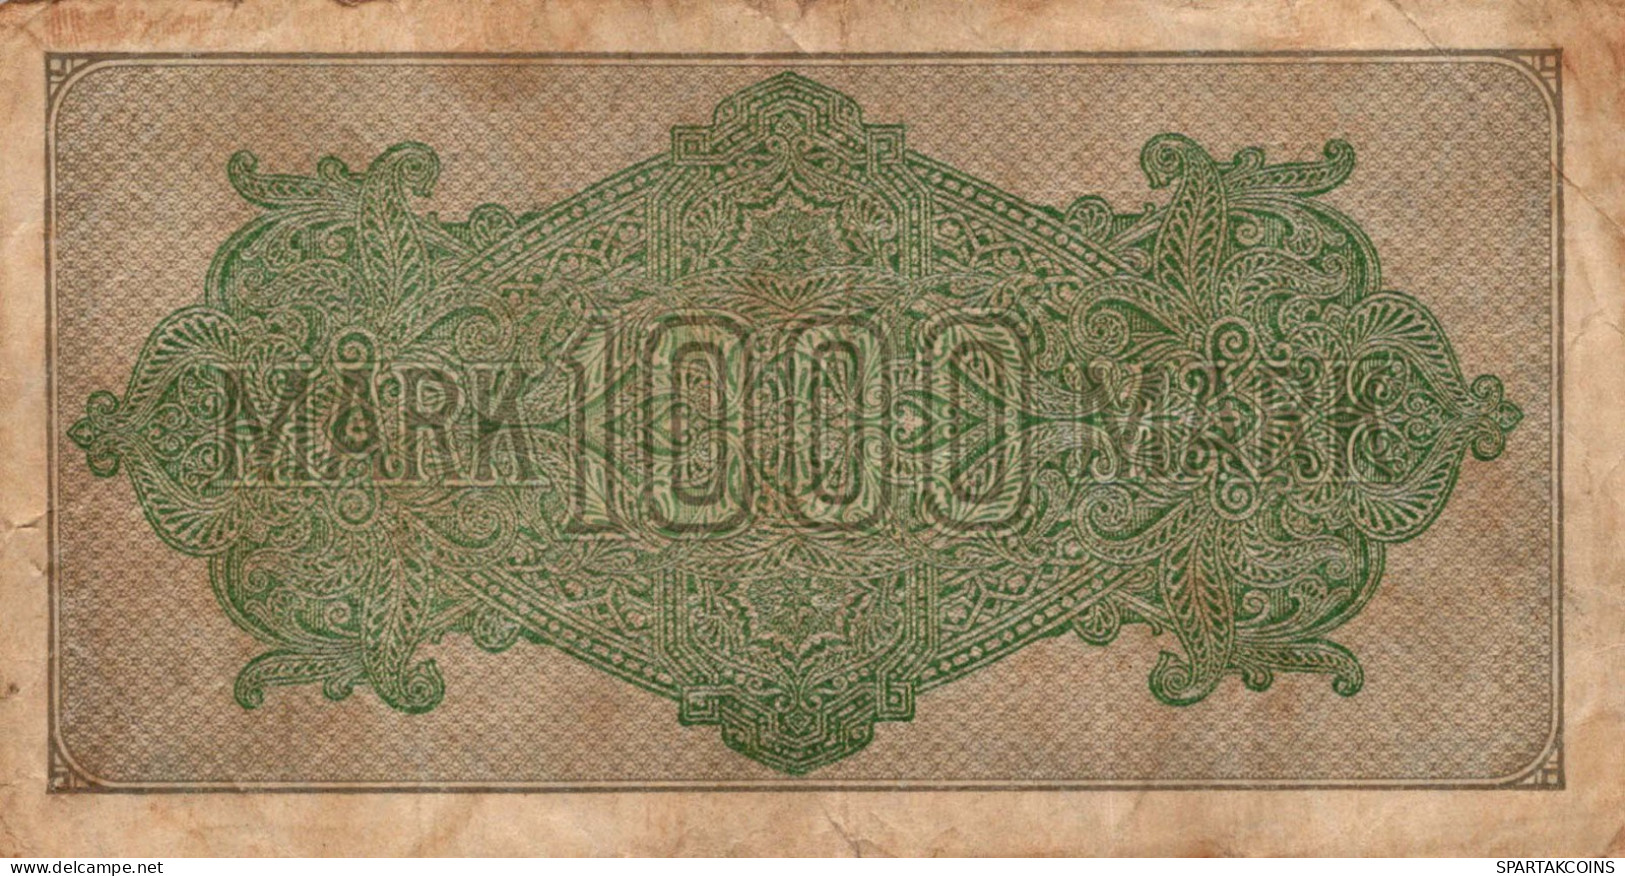 1000 MARK 1922 Stadt BERLIN DEUTSCHLAND Papiergeld Banknote #PL023 - [11] Local Banknote Issues